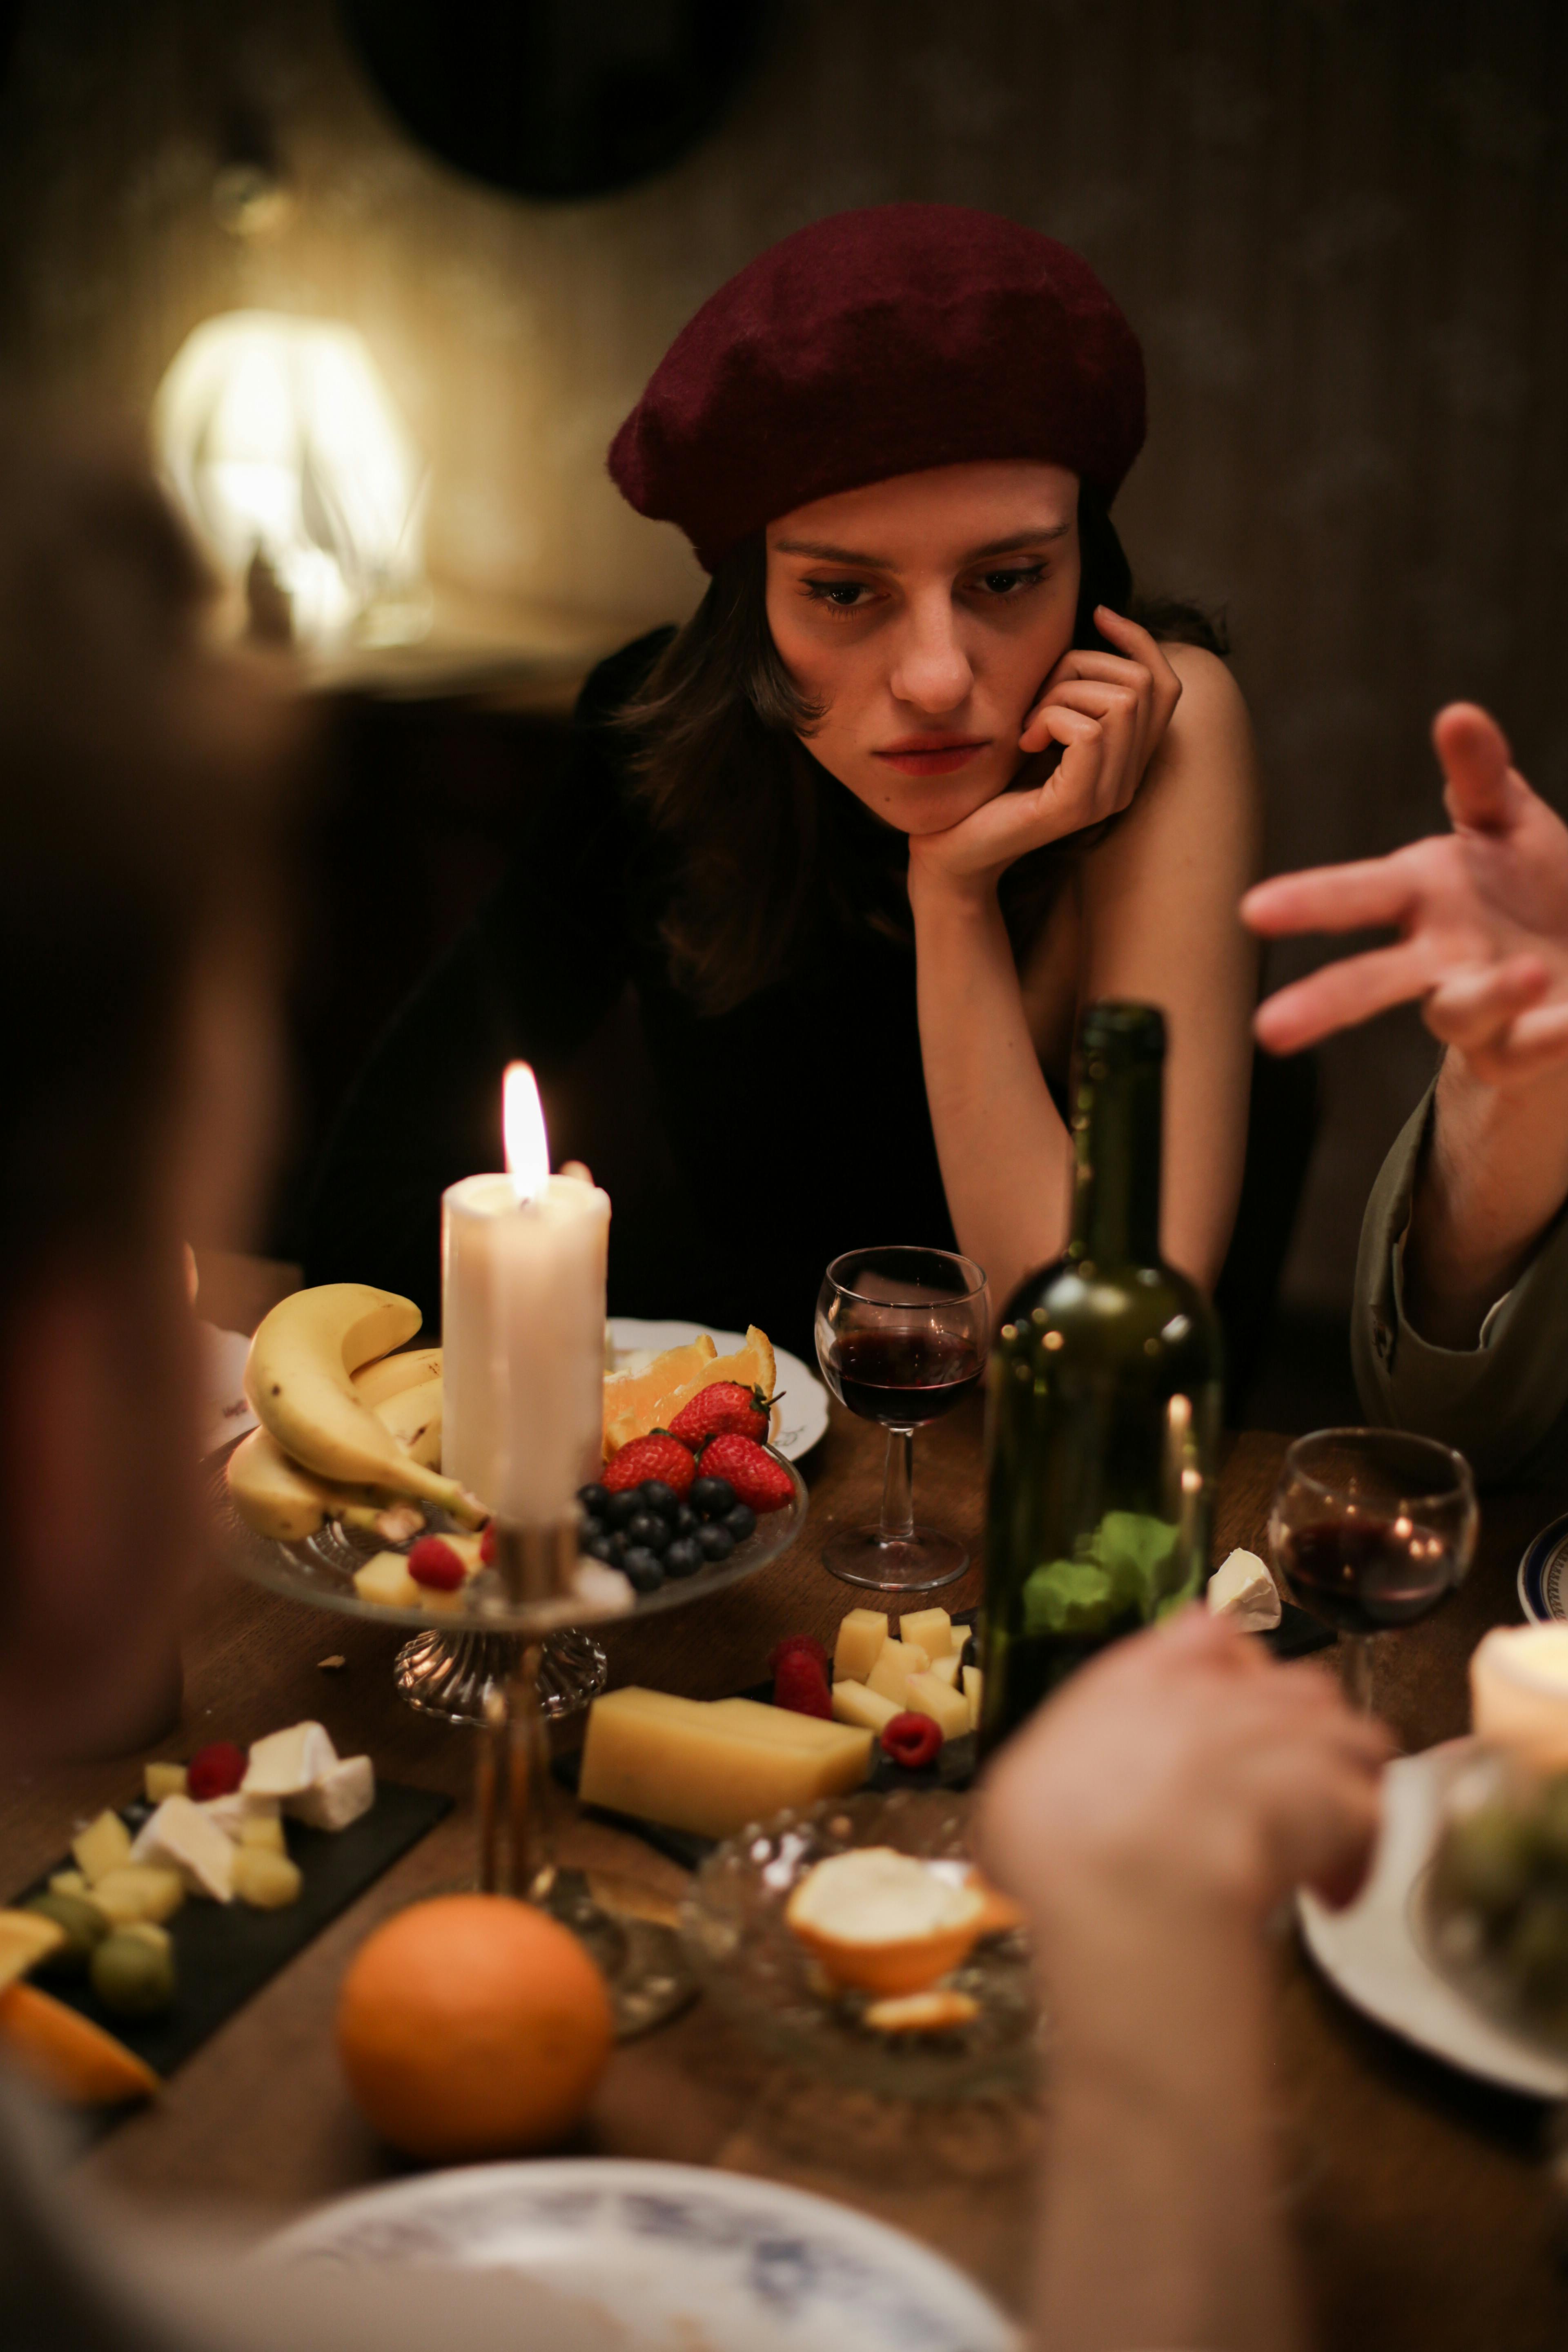 Une femme exprimant son mécontentement à table | Source : Pexels